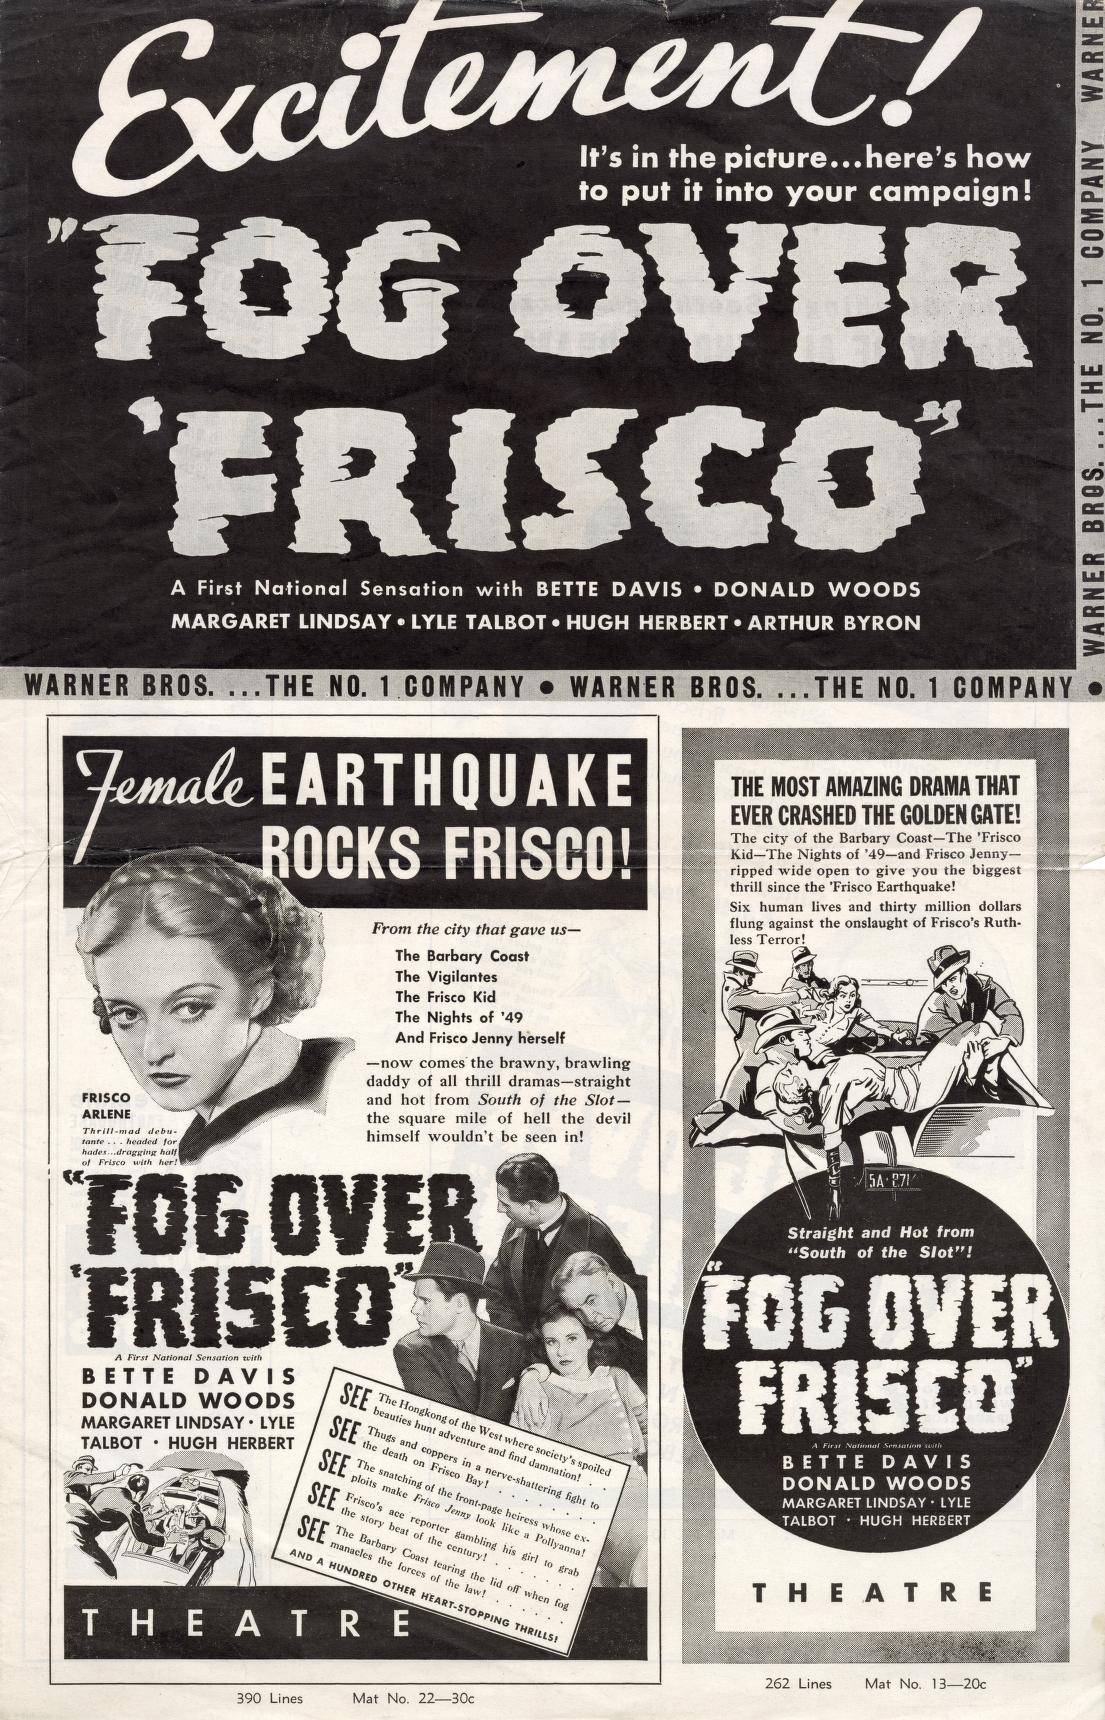 Fog Over Frisco (Warner Bros.)